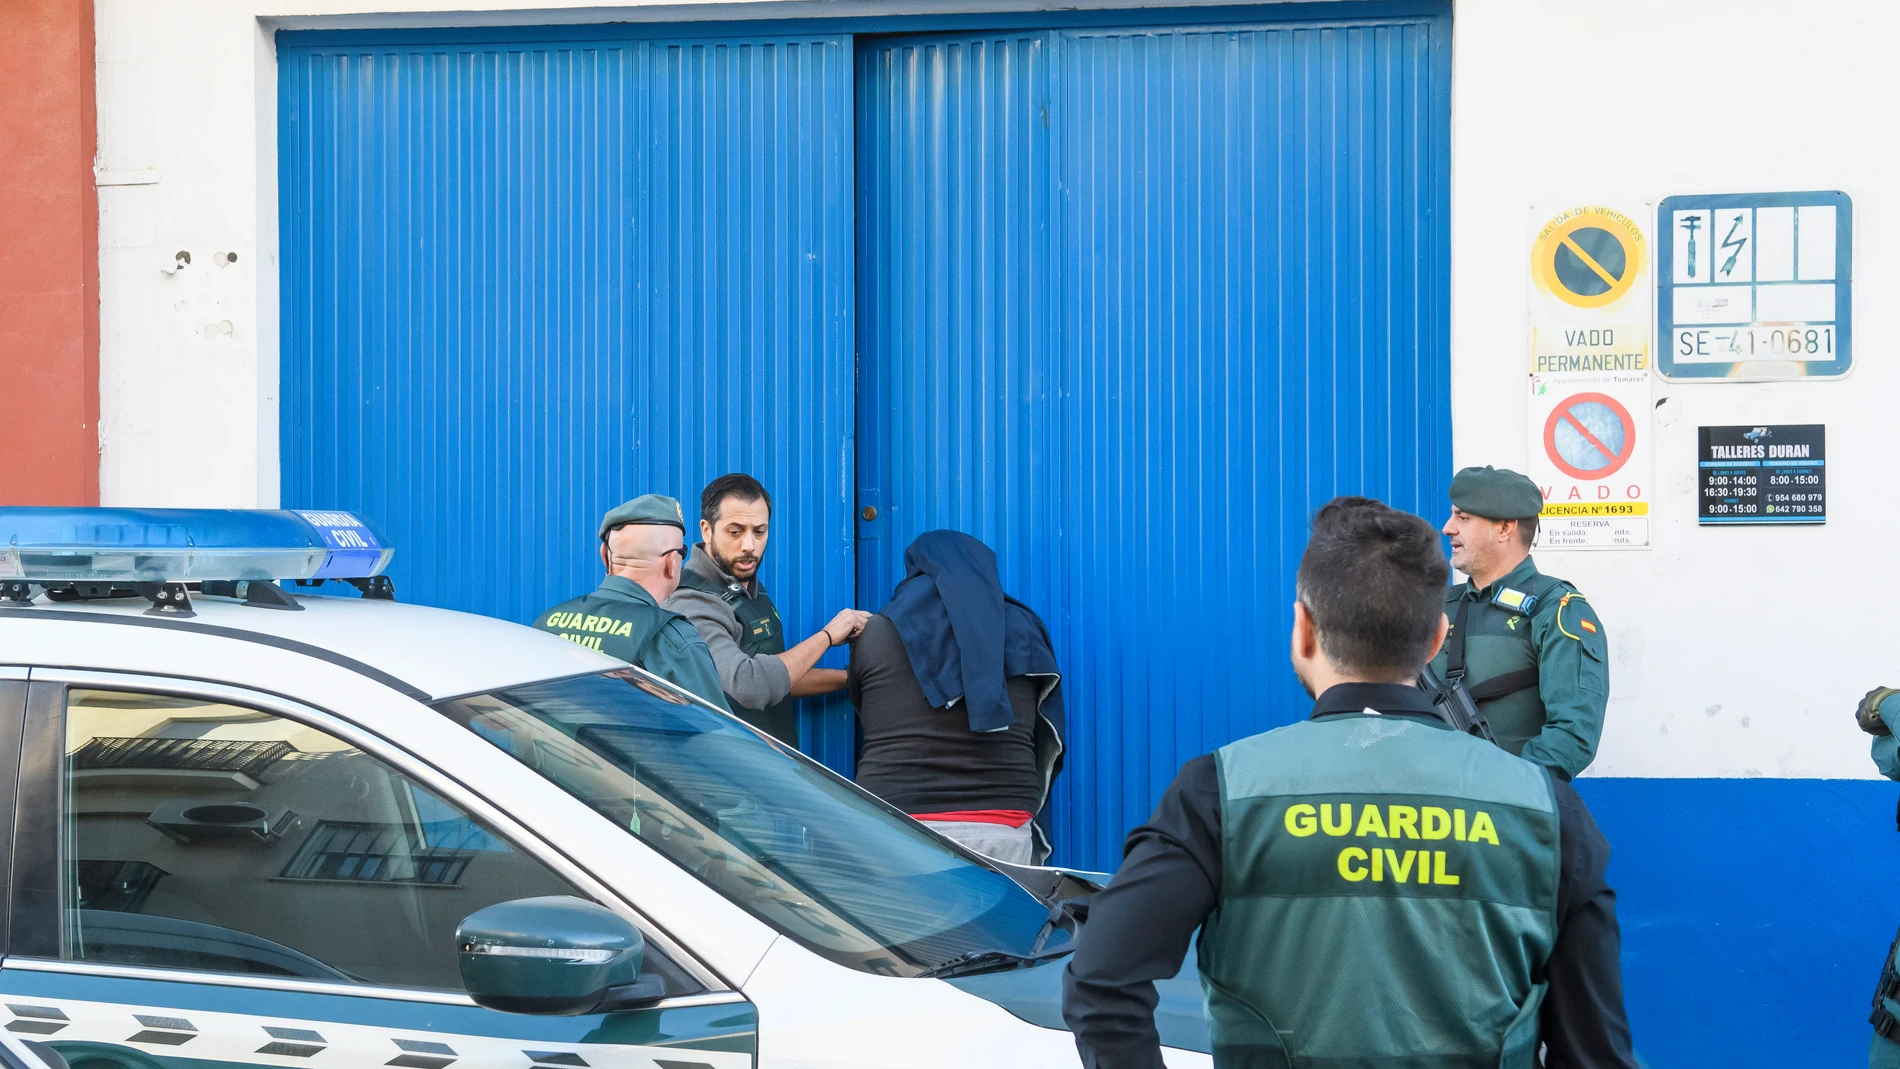 Agentes de la Guardia Civil durante un registro realizado en un taller mecánico en Tomares (Sevilla) este viernes en el marco de una operación contra el tráfico de cocaína a gran escala, en la que han participado unos 200 agentes desplegados en Madrid, Ciudad Real y las provincias andaluzas de Cádiz y Sevilla